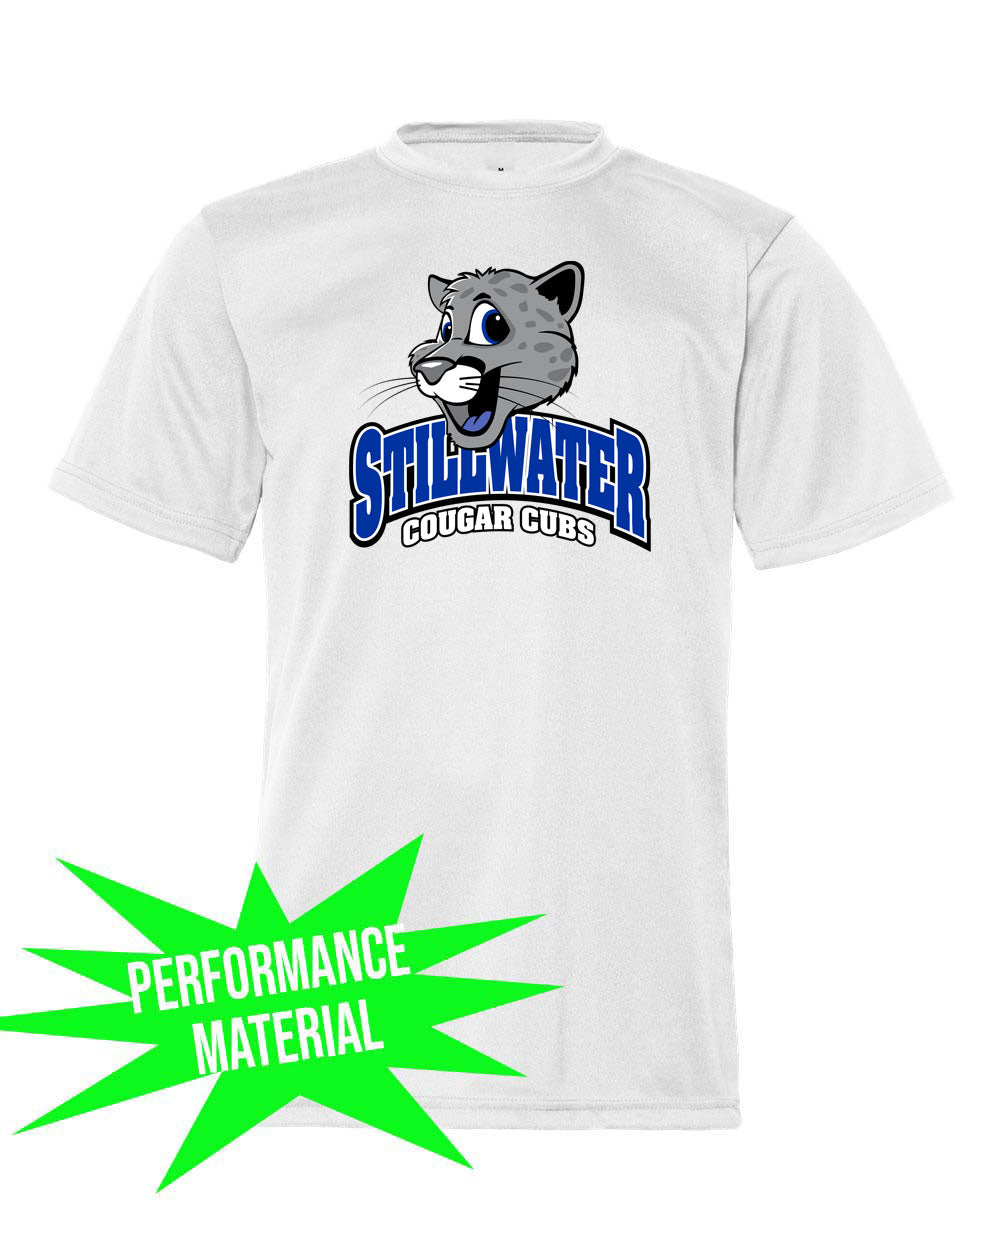 Stillwater Performance Material T-Shirt Design 22